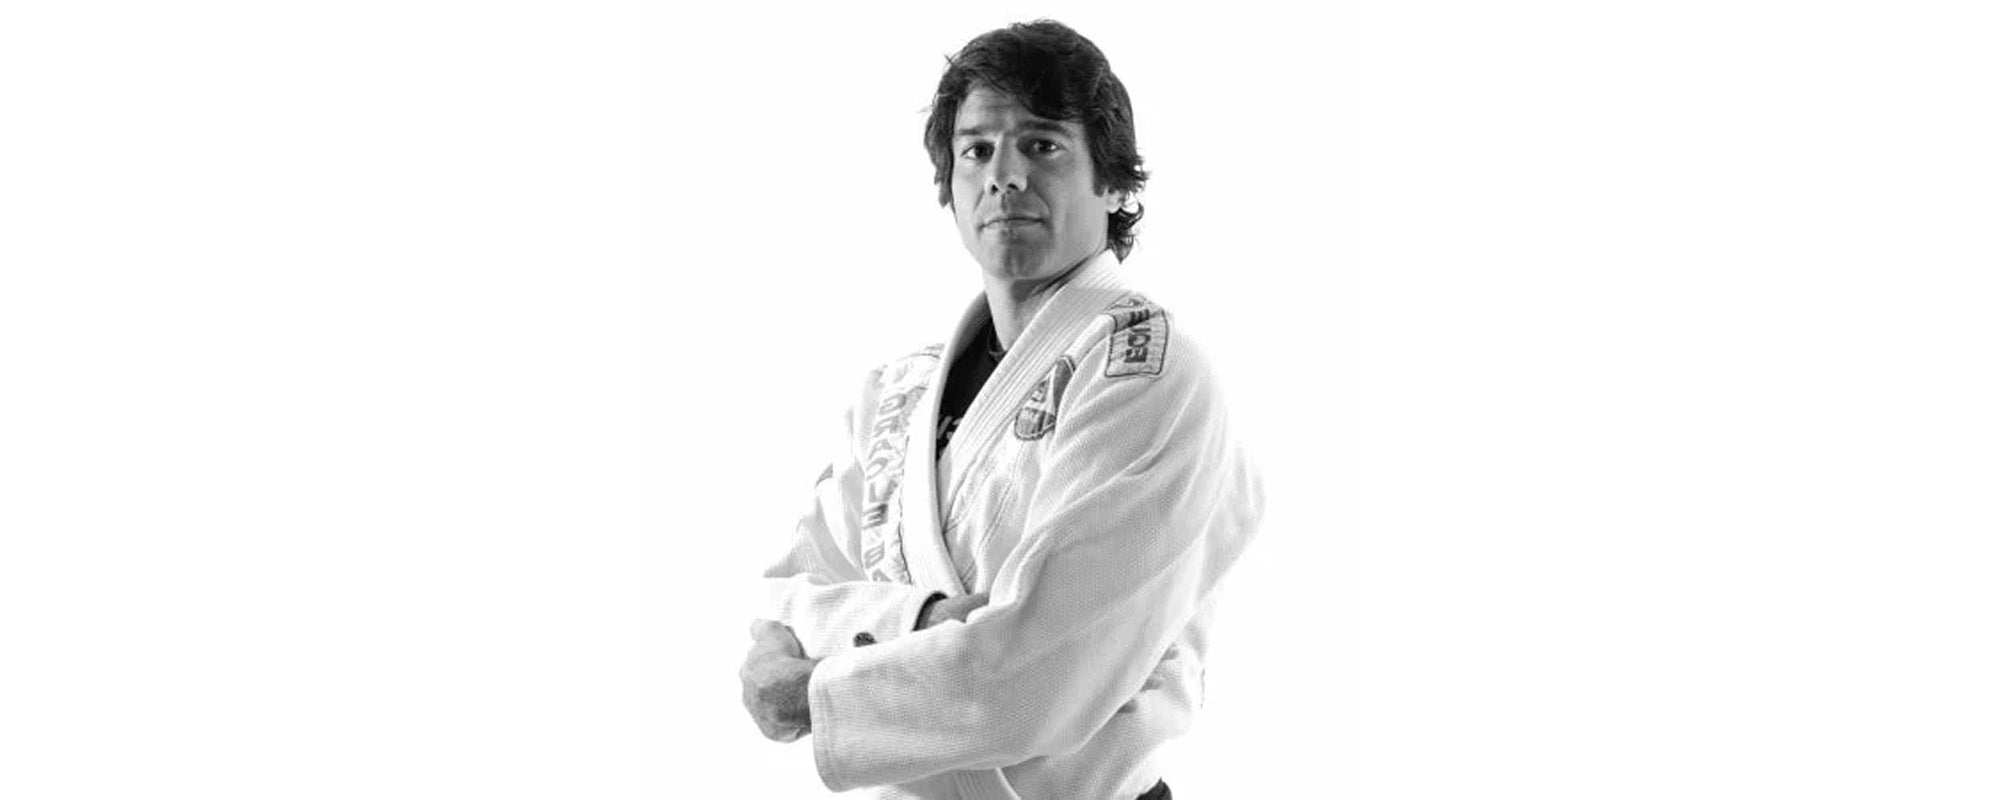 Bruno Franco Fernandes - The Fifth Degree Black Belt